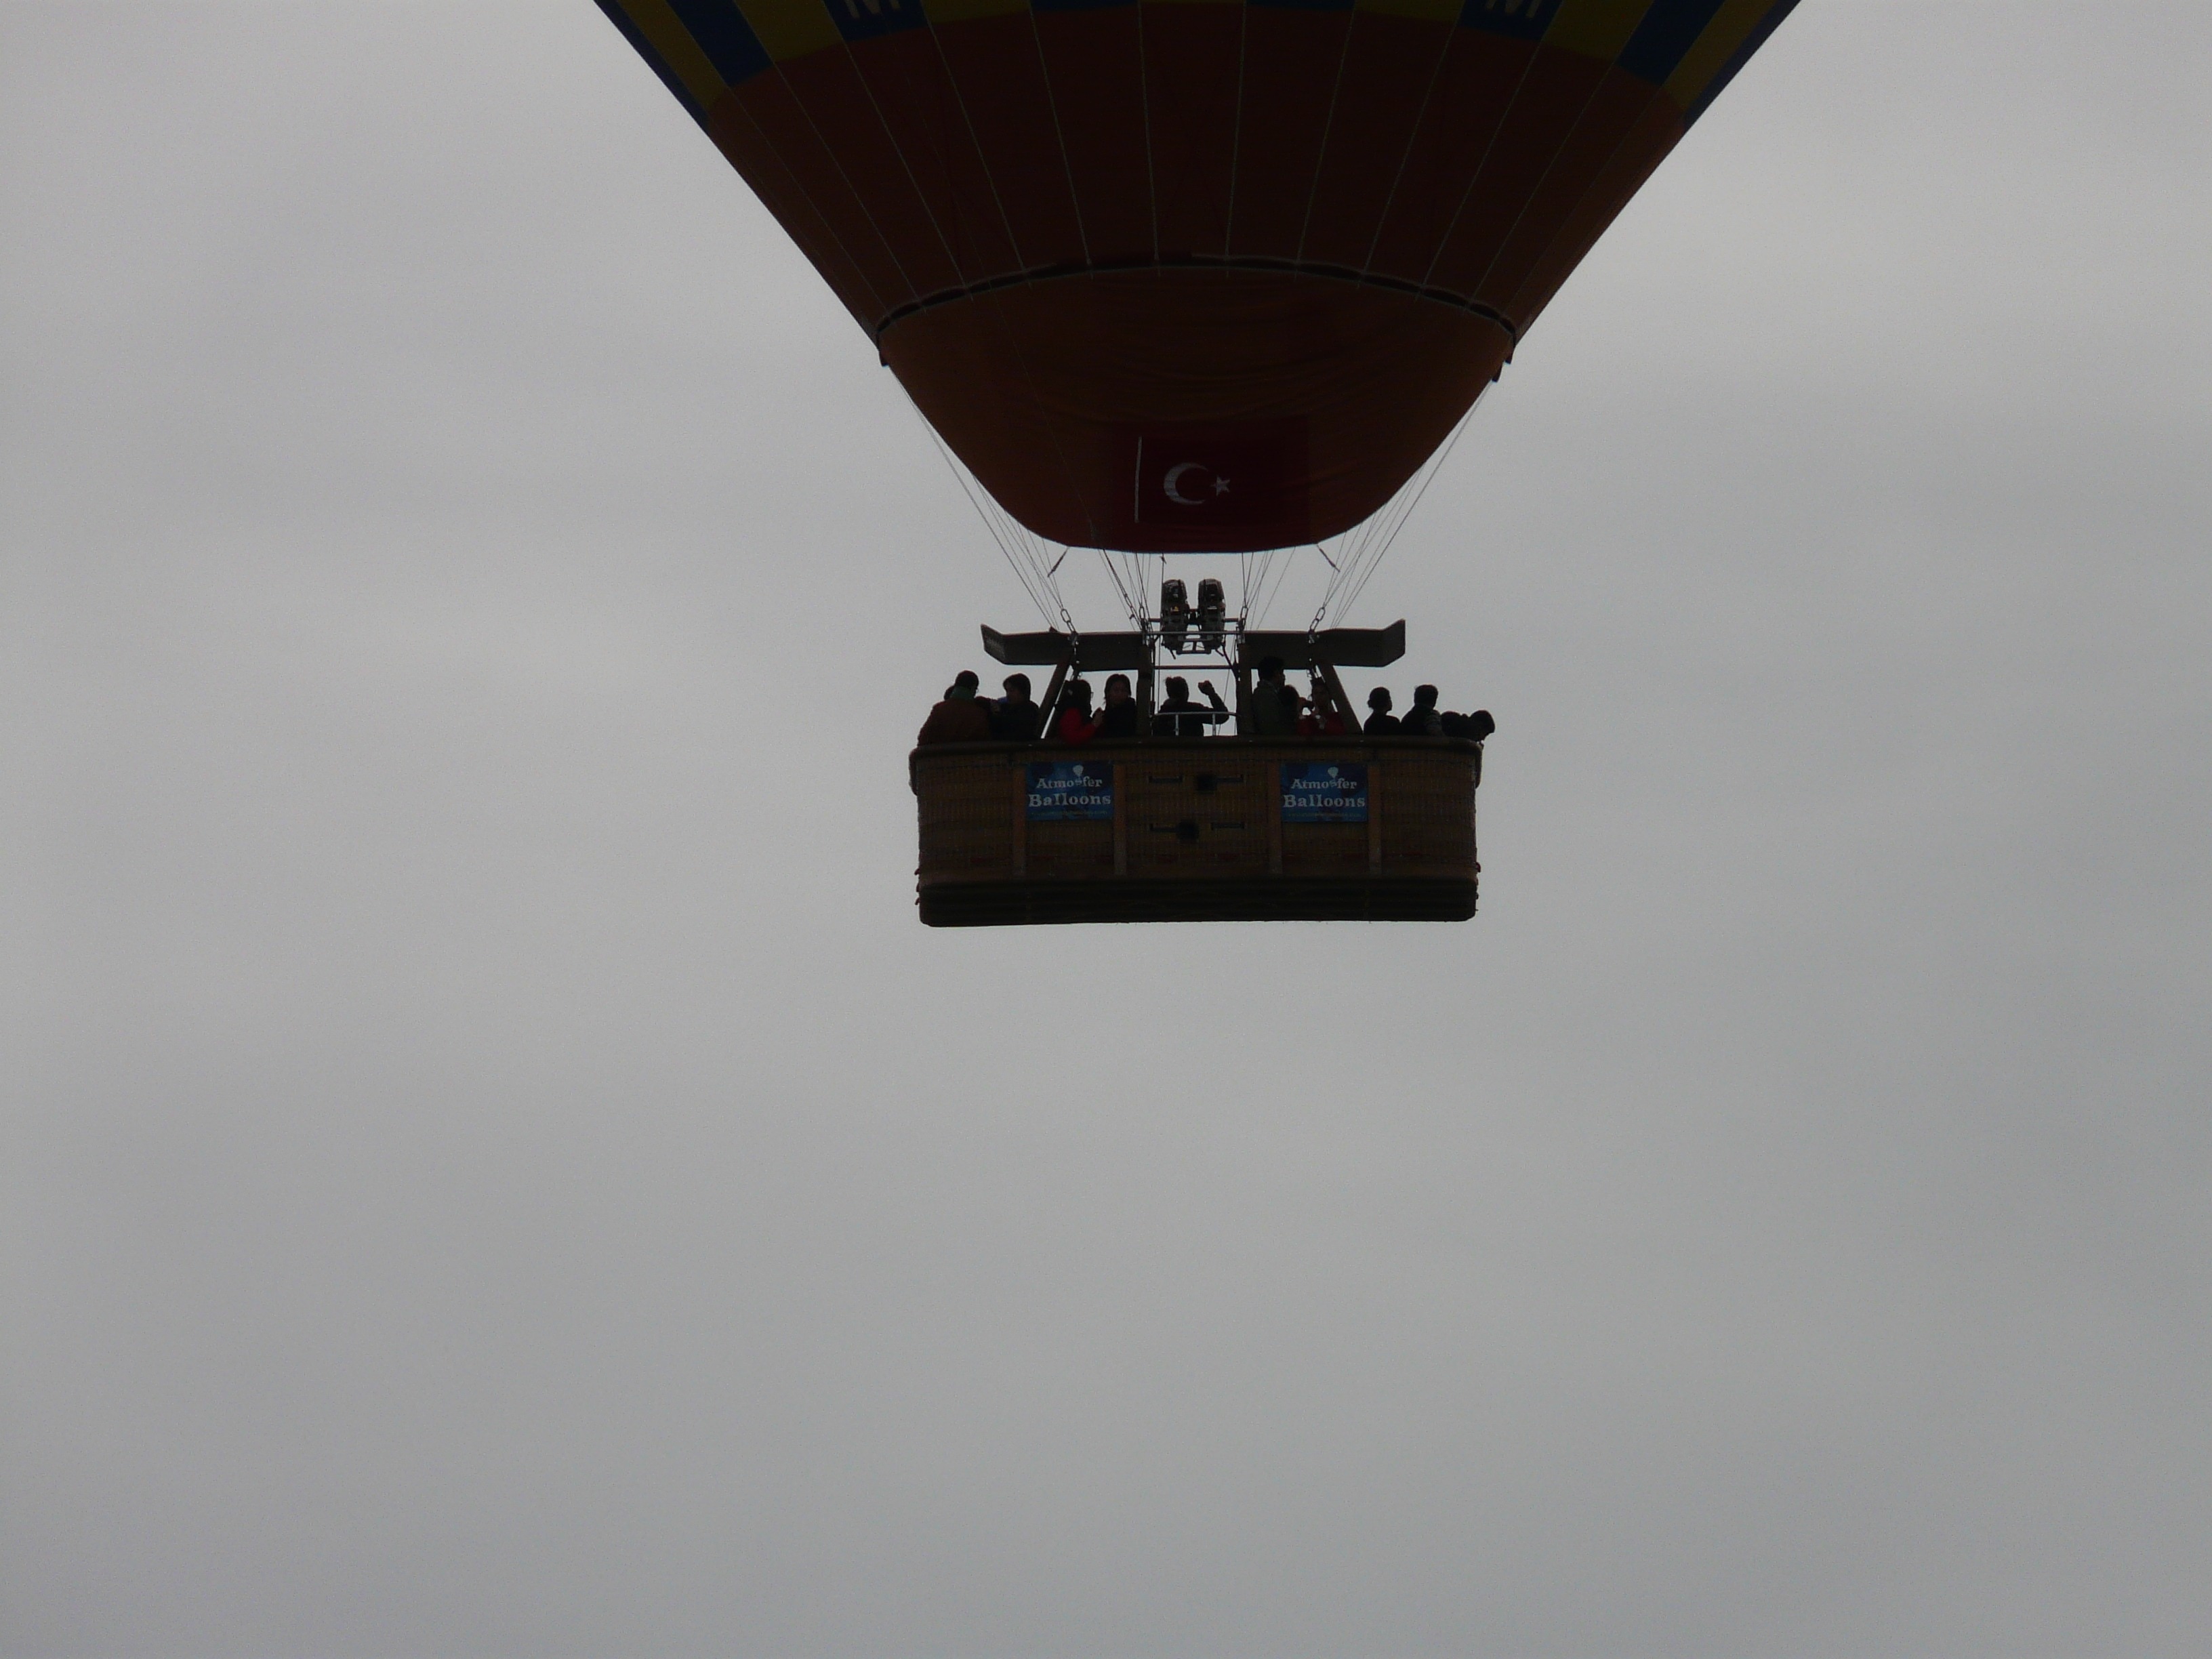 silhouette hot air balloon